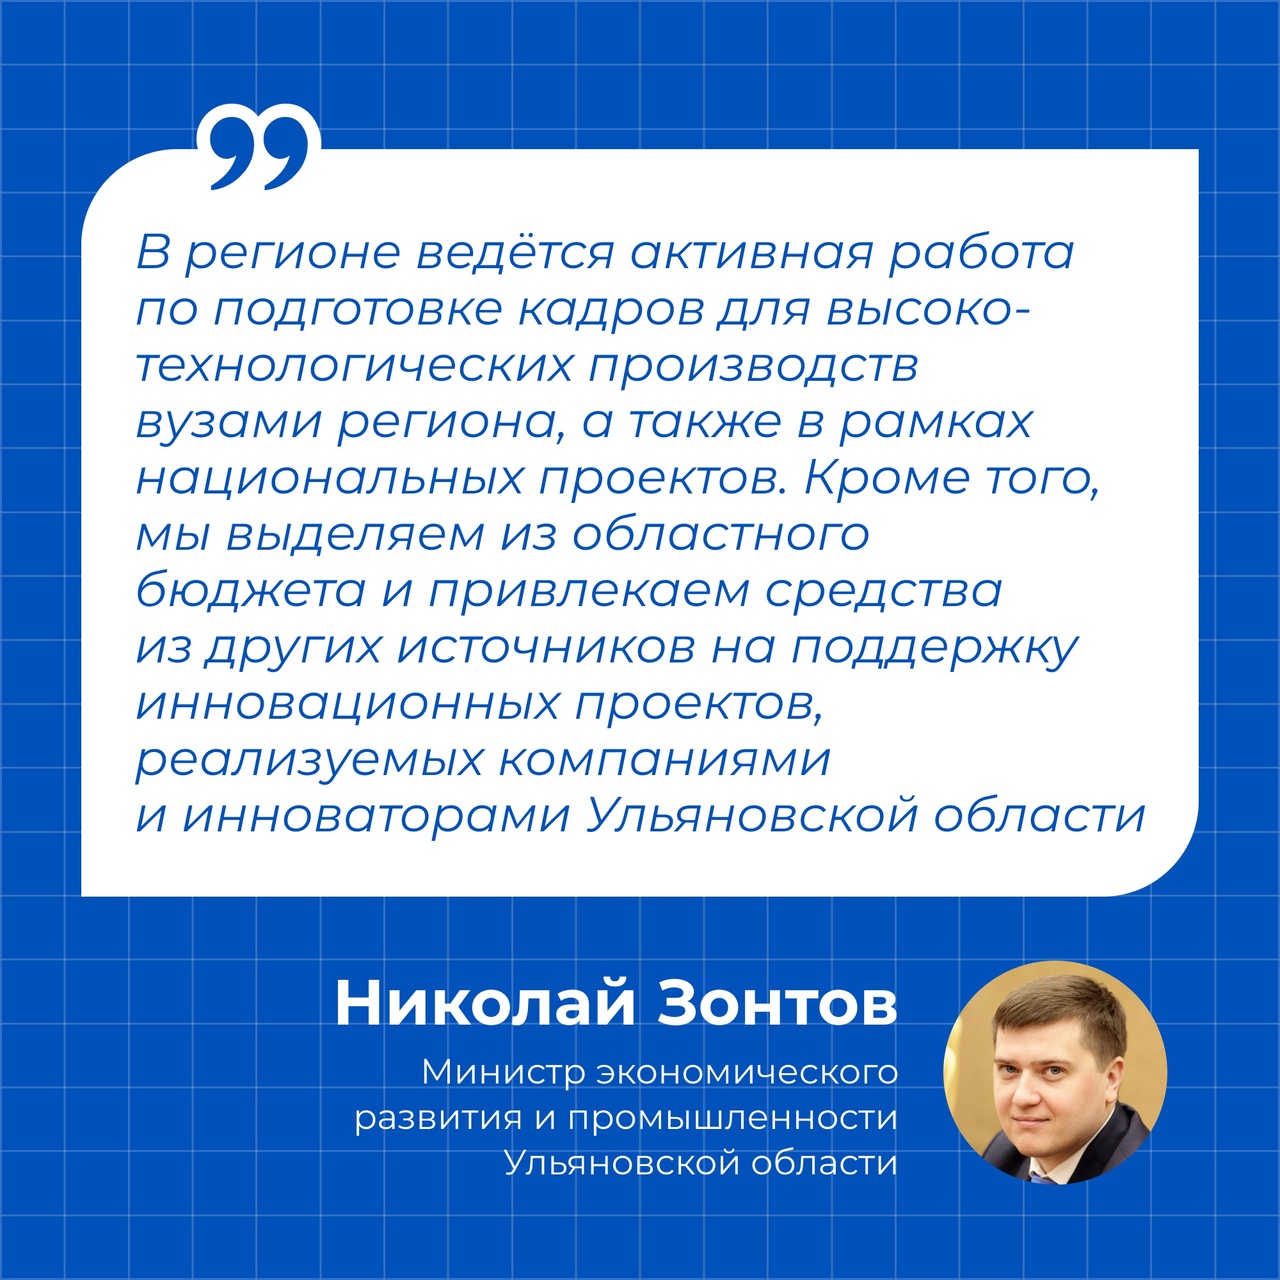 Ульяновская область поднялась в рейтинге STEM-кадров.